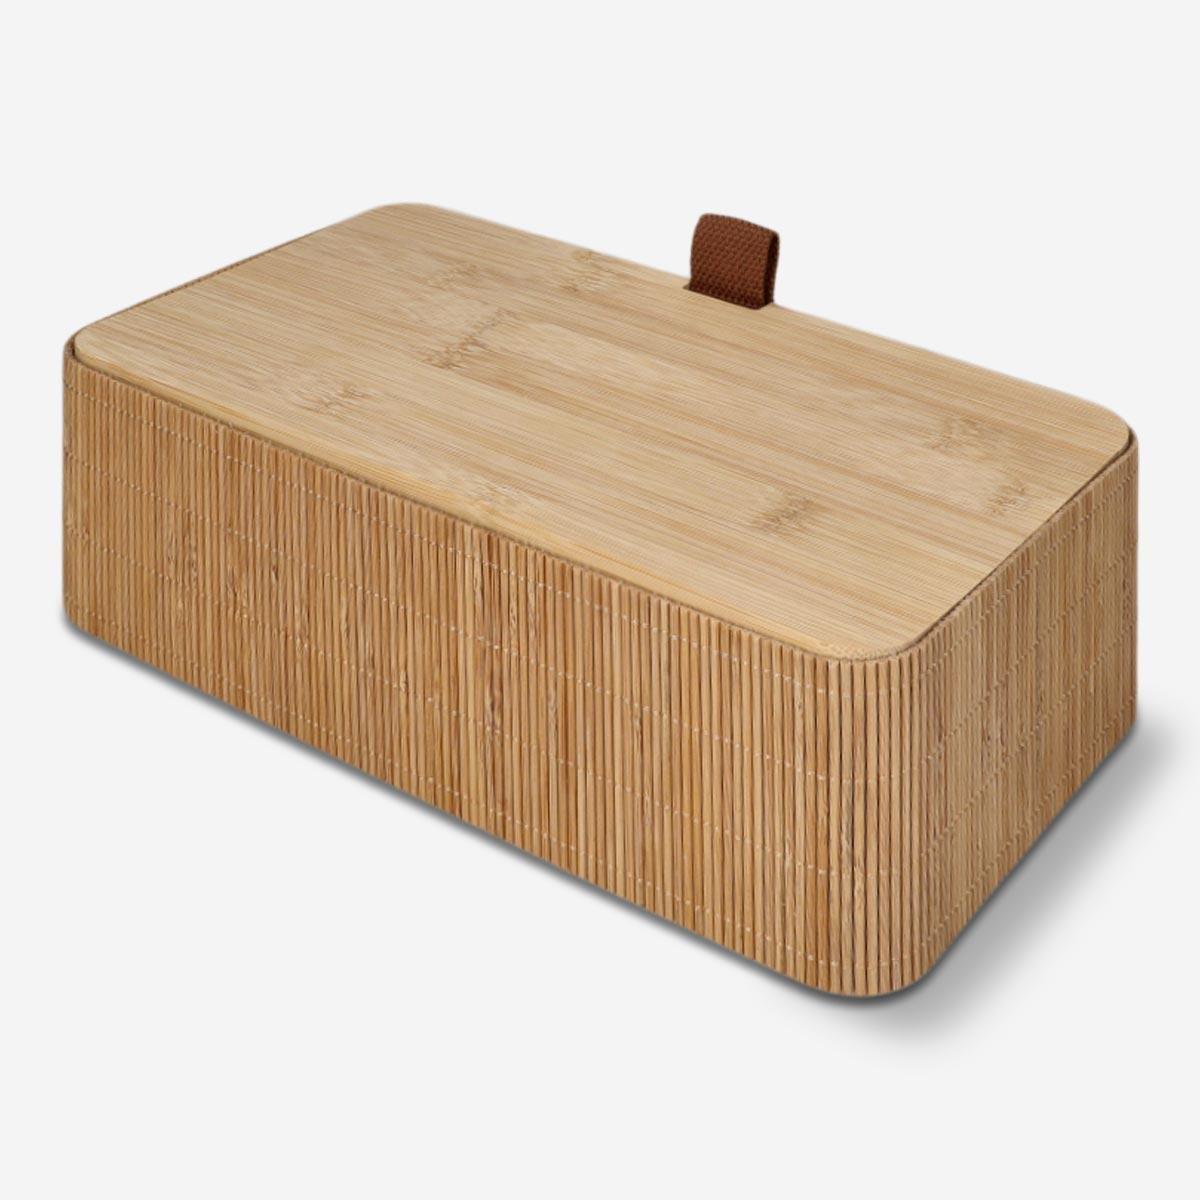 Wooden storage box. 27 cm